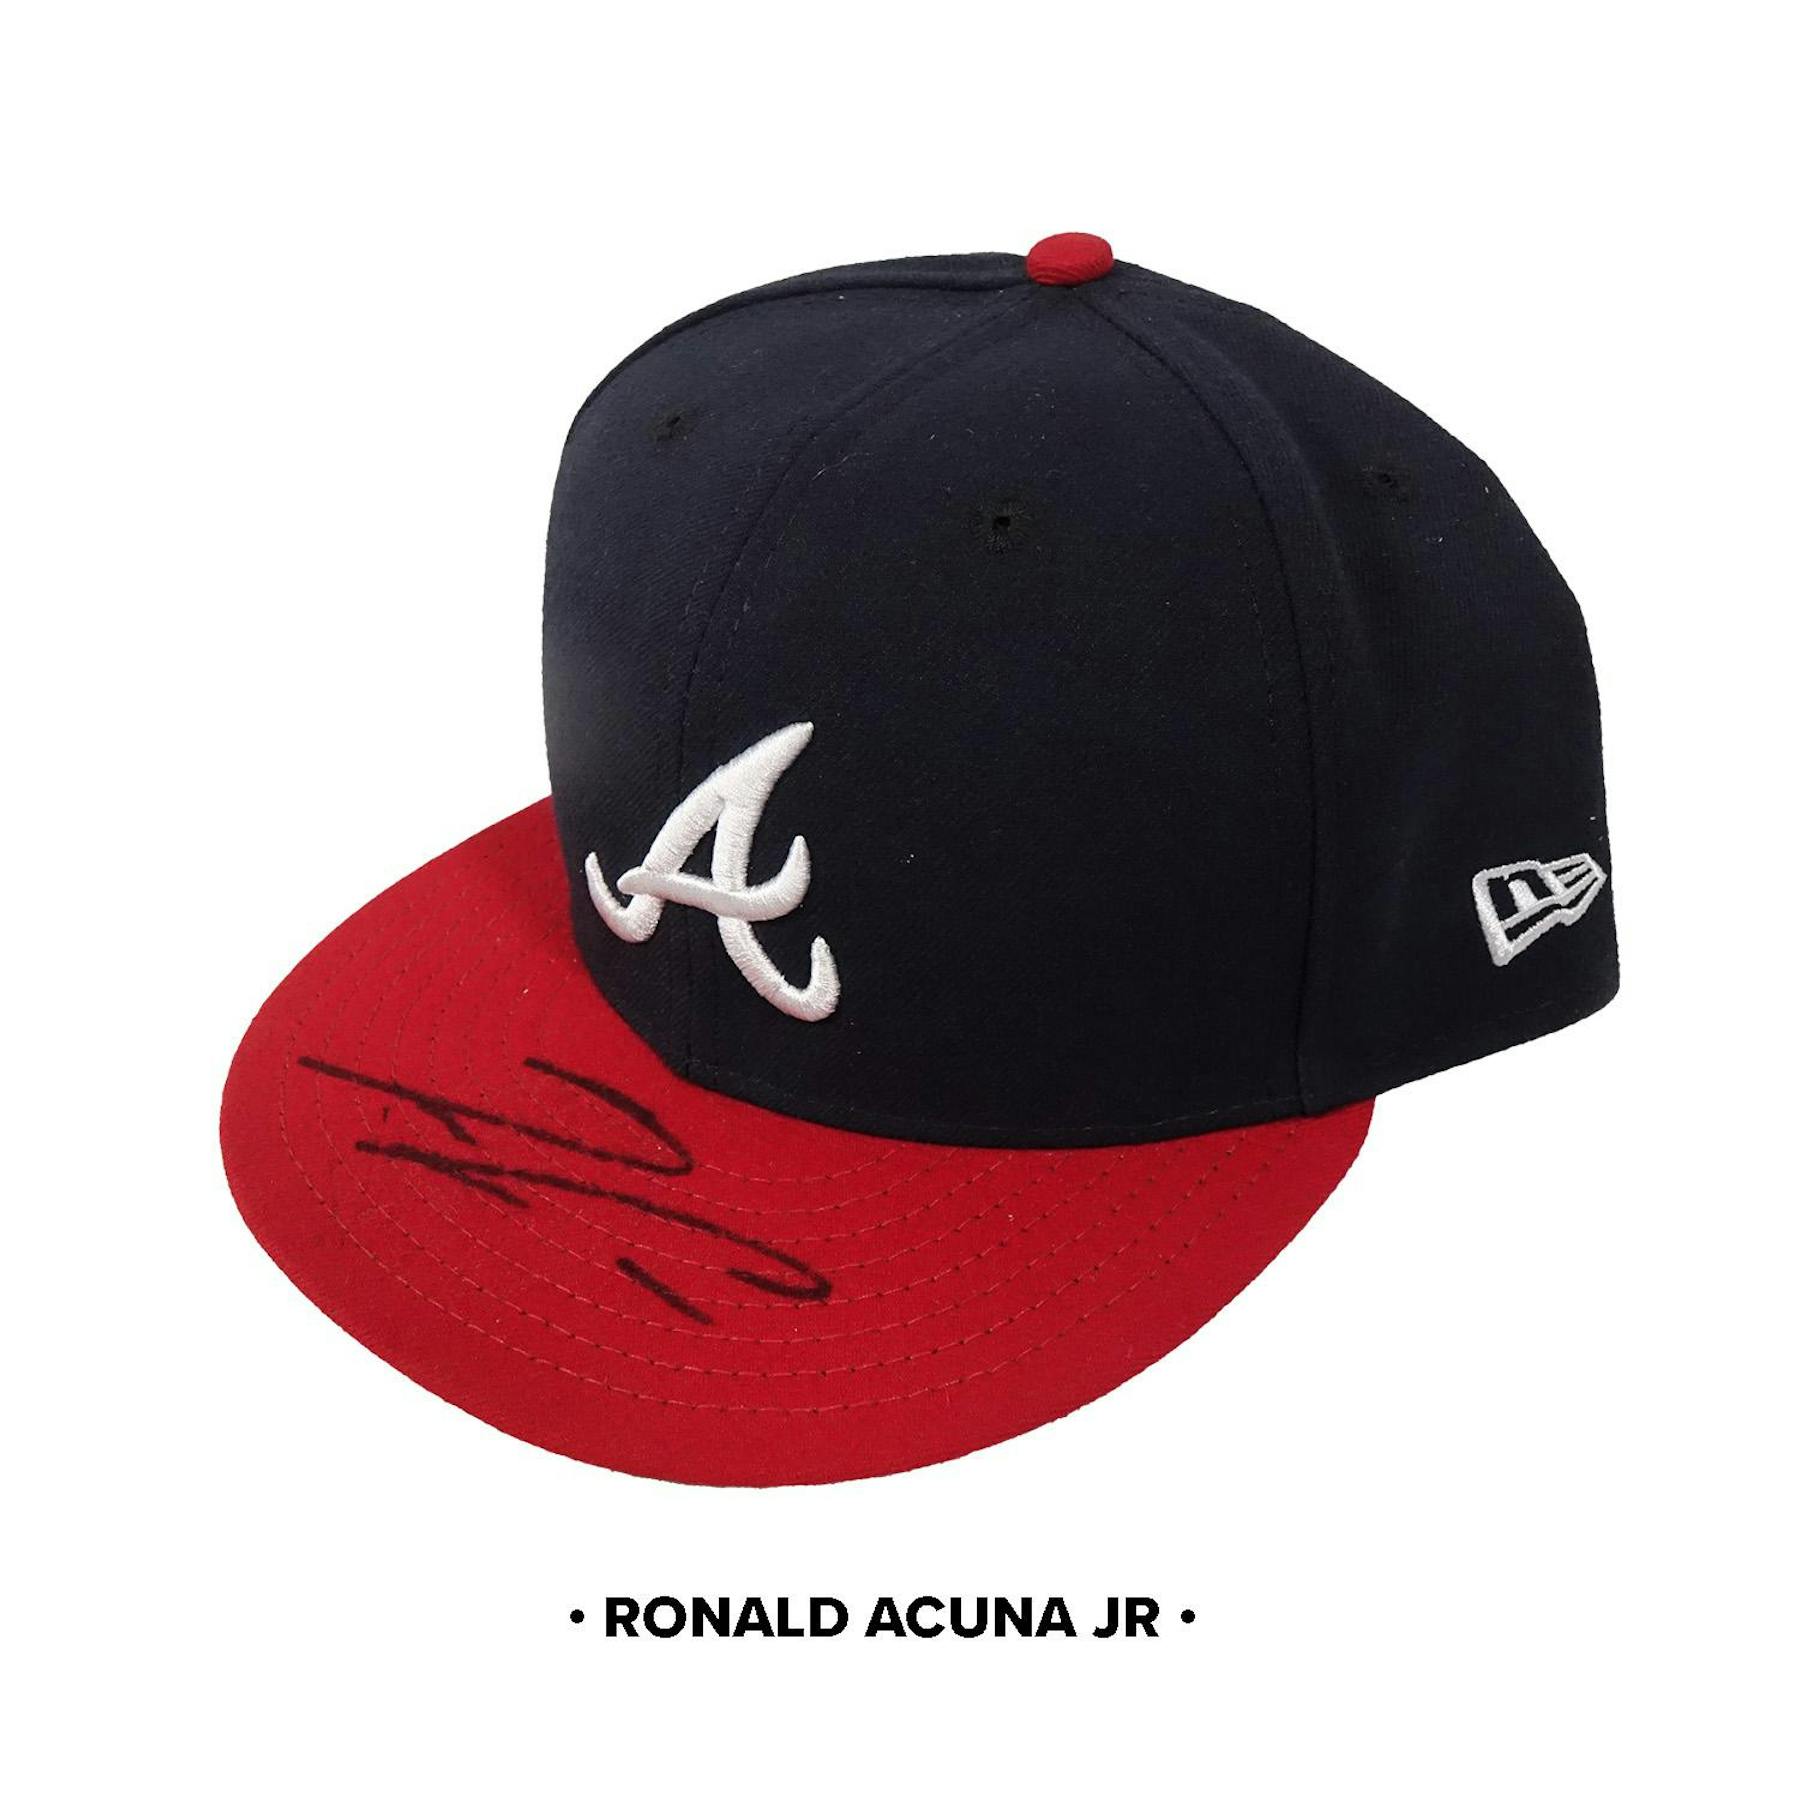 Alec Bohm Autographed World Series Cap